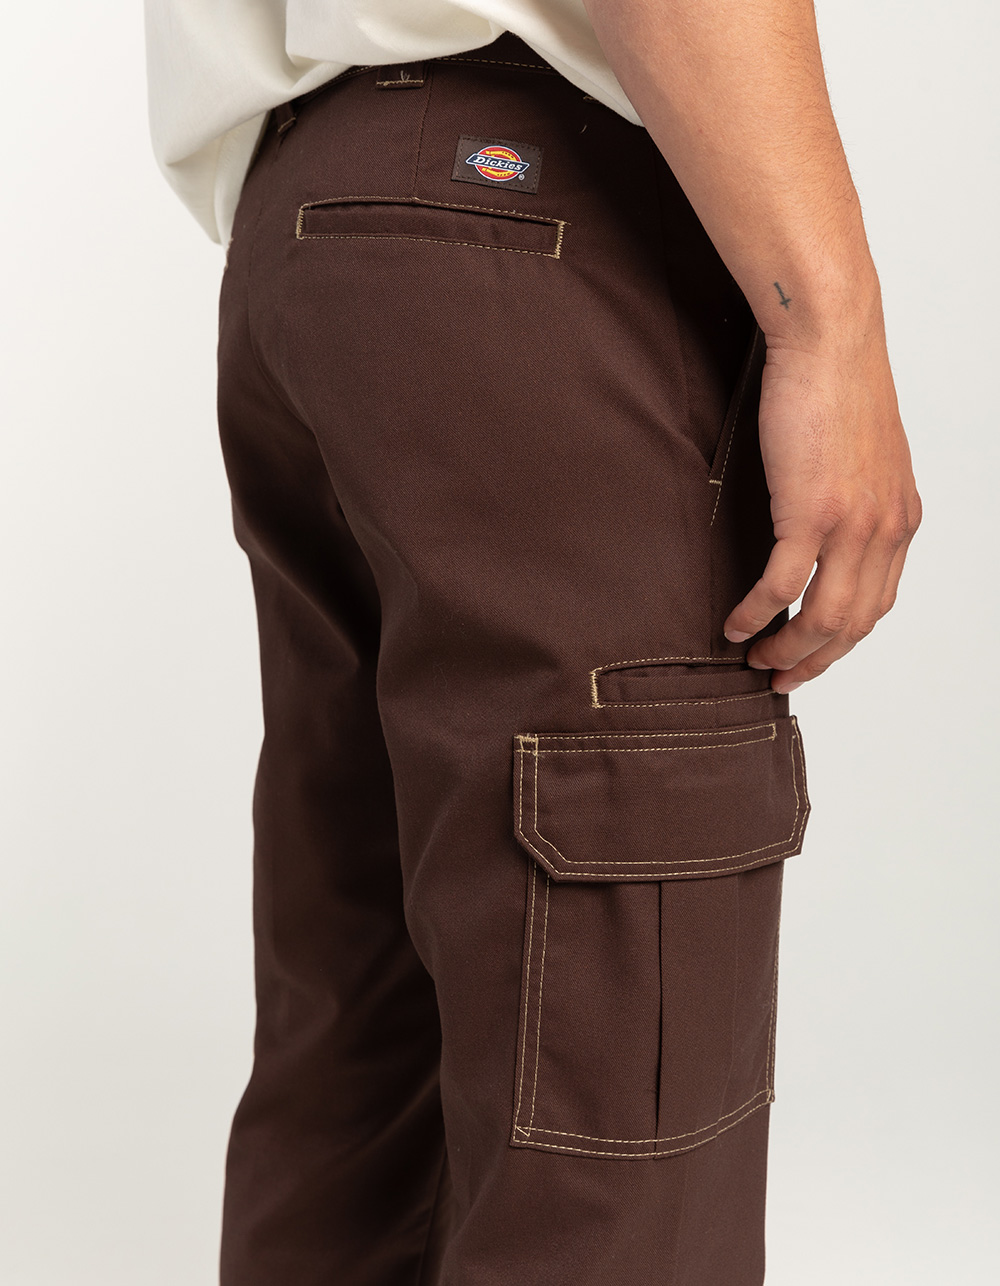 Dickies Mens Flex Skinny Straight Fit Wrinkle Resistant Work Pants Timber  Brown 33 x 32  Walmartcom